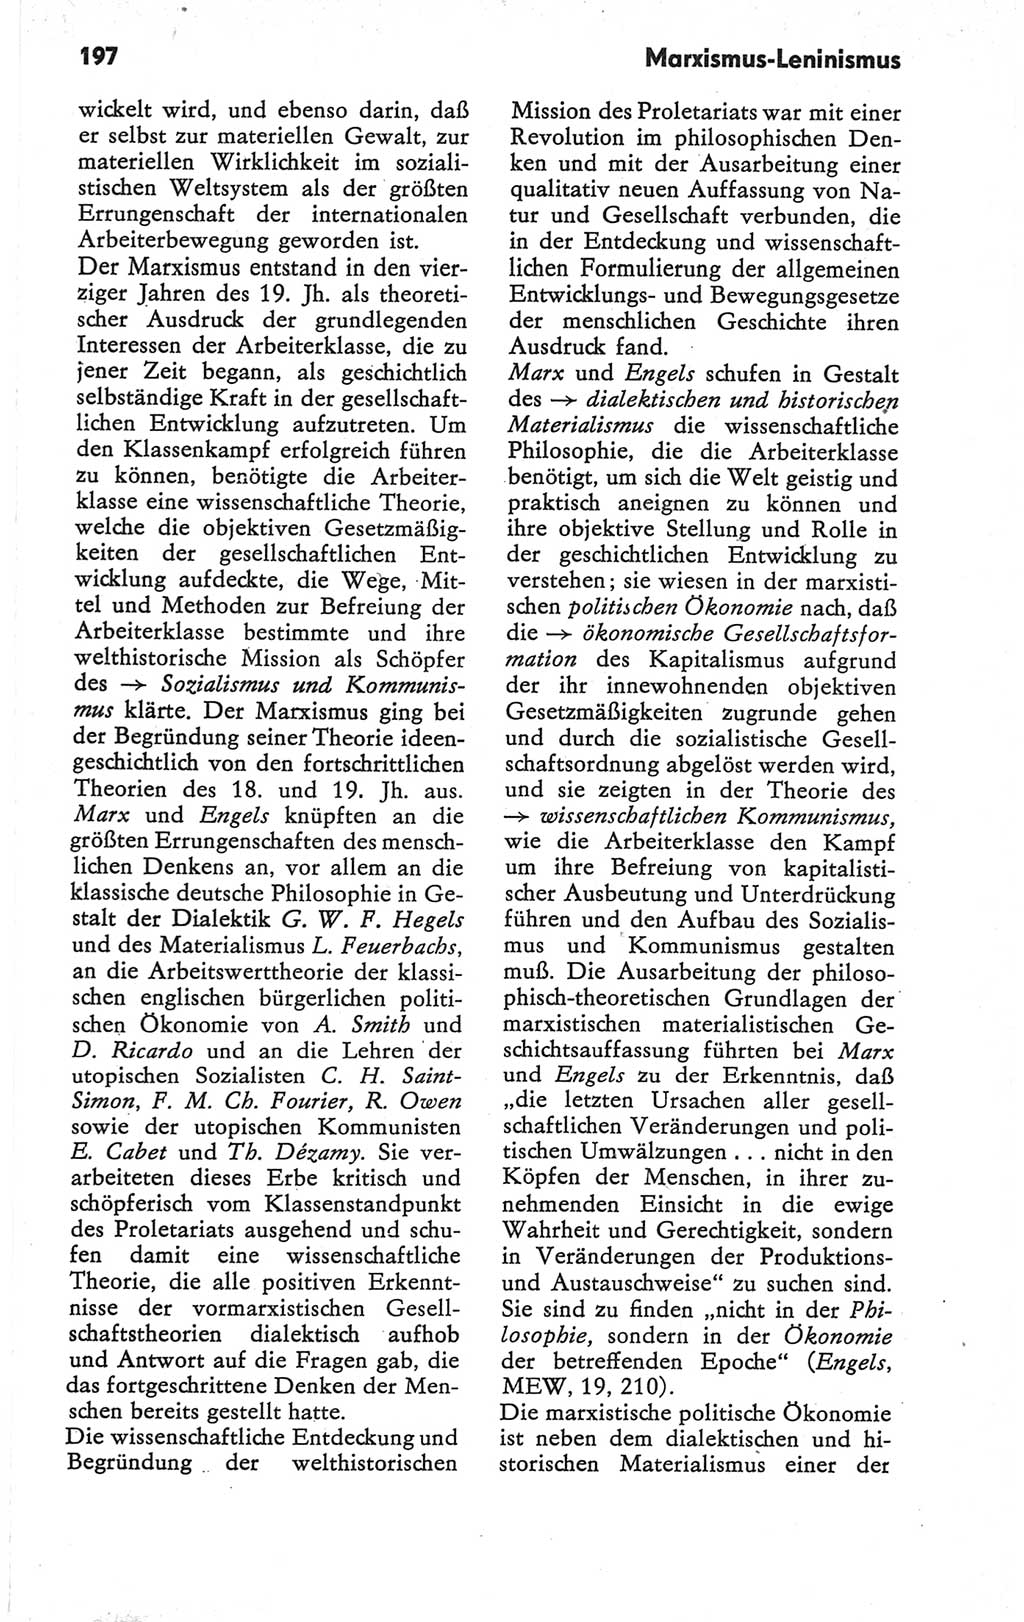 Kleines Wörterbuch der marxistisch-leninistischen Philosophie [Deutsche Demokratische Republik (DDR)] 1979, Seite 197 (Kl. Wb. ML Phil. DDR 1979, S. 197)